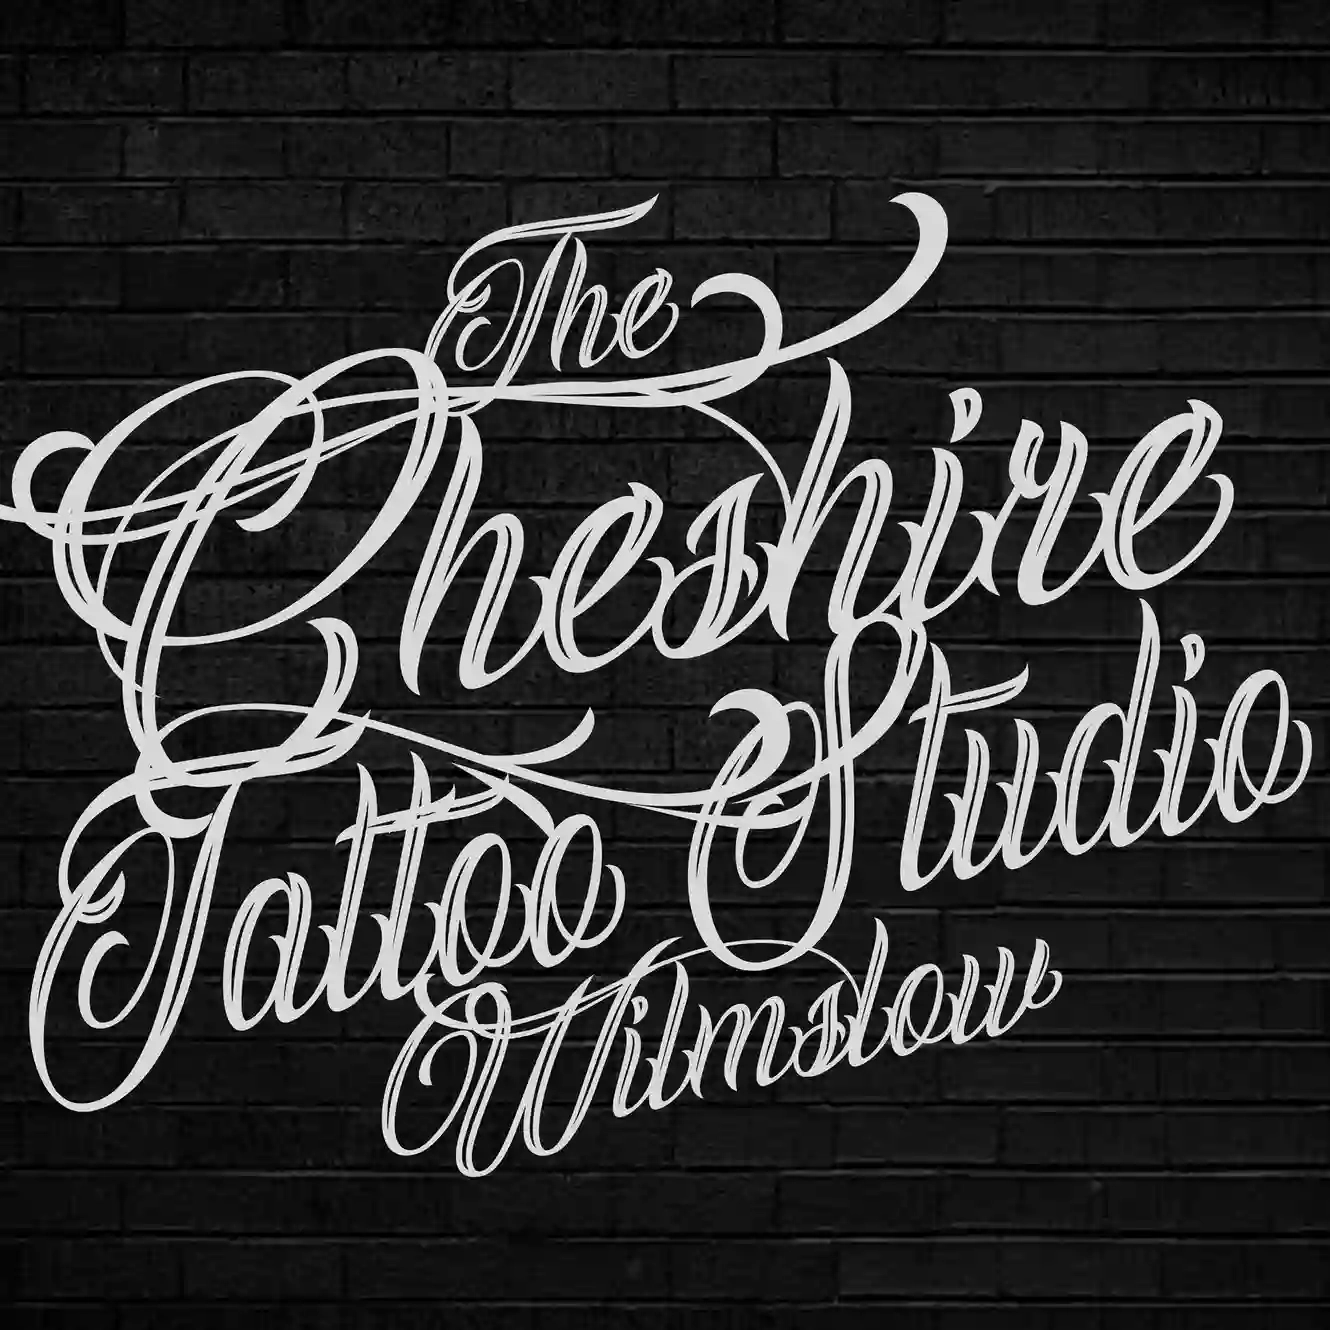 The Cheshire Tattoo Studio